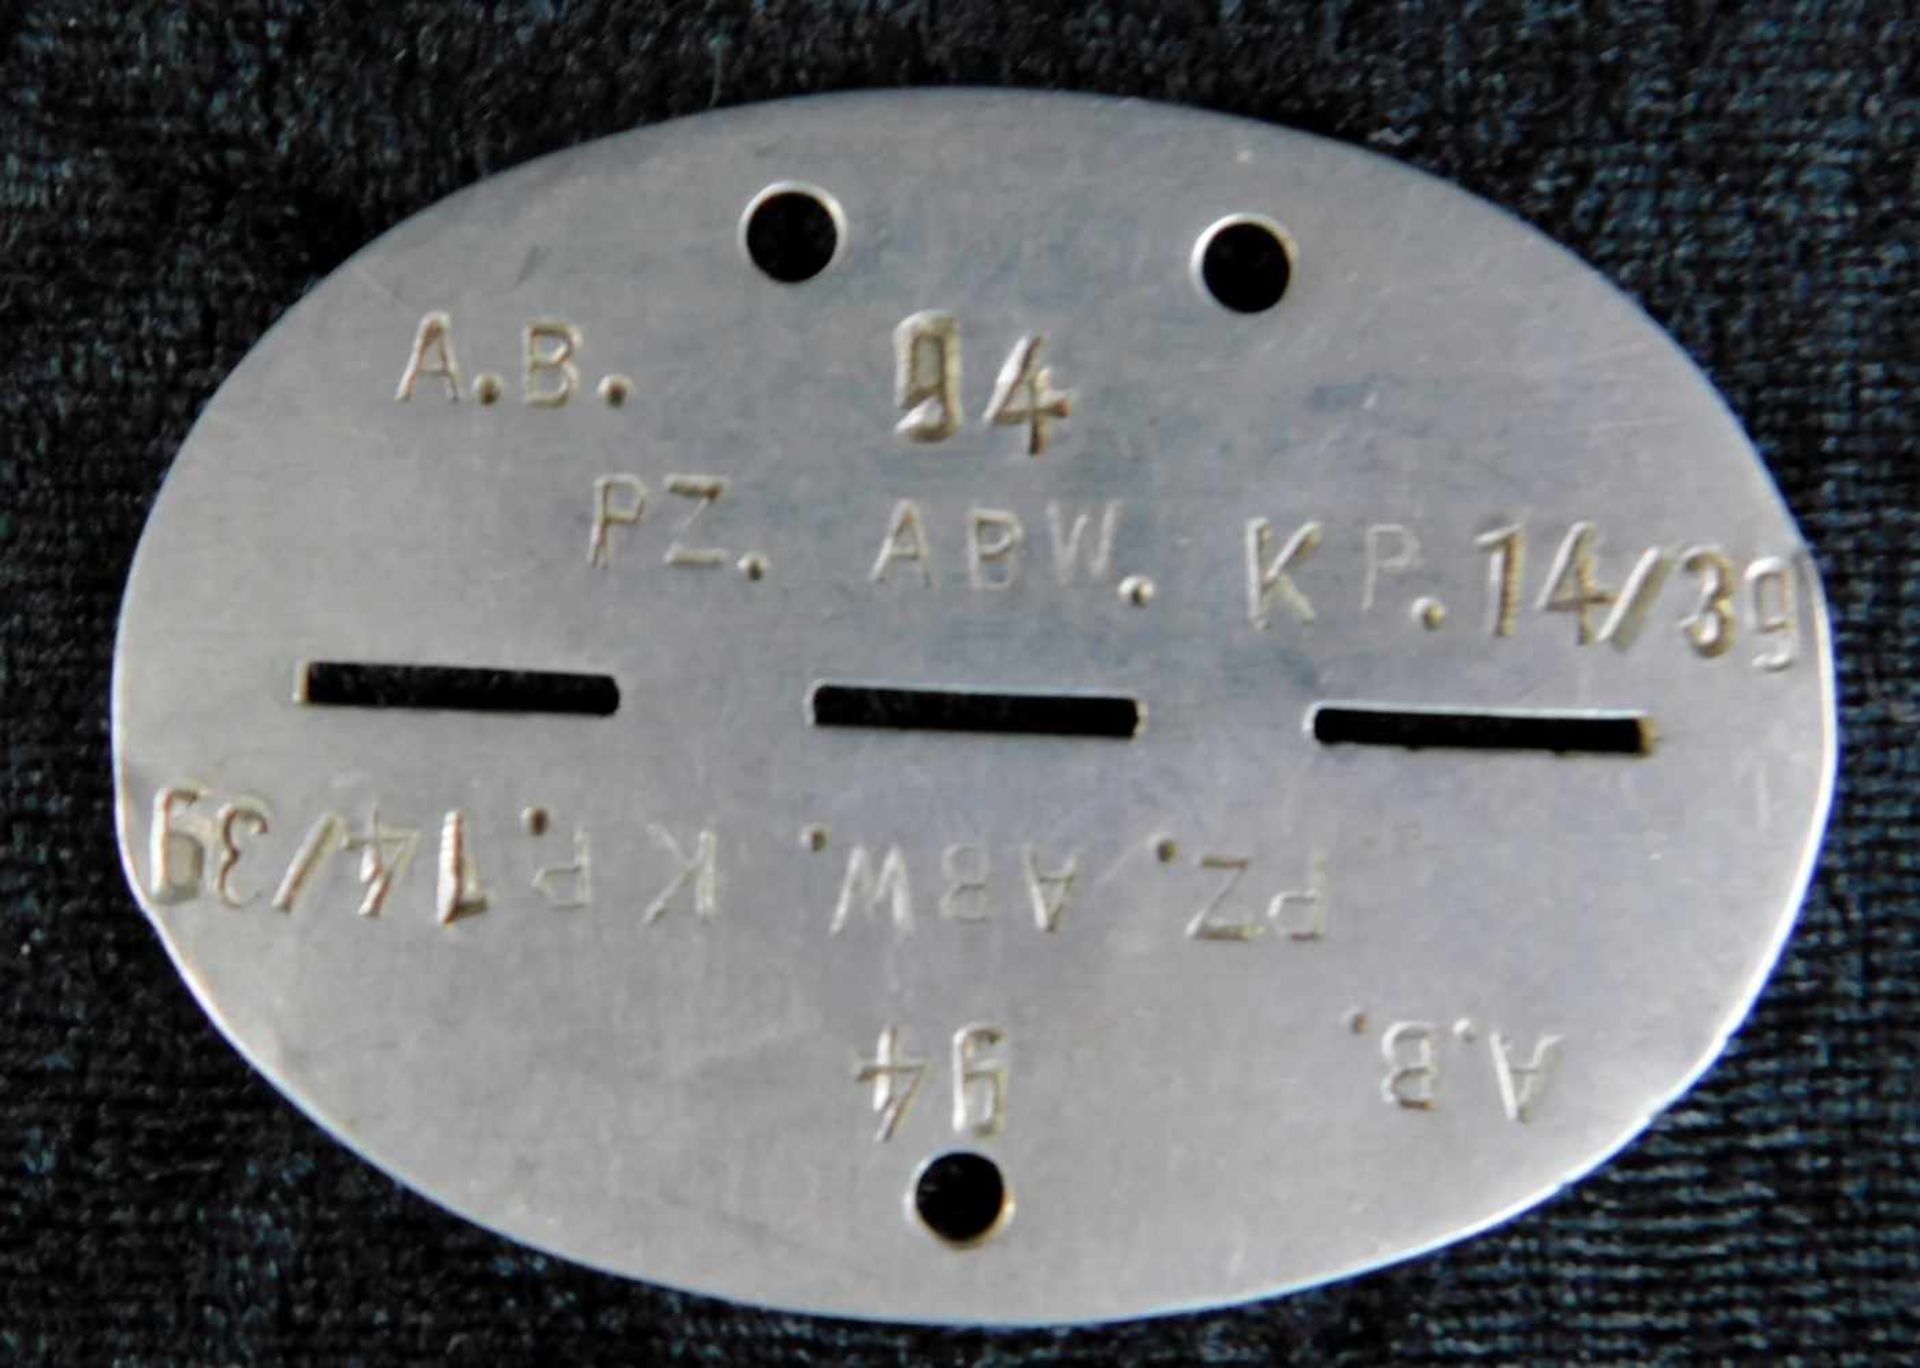 2. WK, Erkennungsmarke, Metall, Panzer Abwehr Kompanie 14/39, Maße 7,2 cm x 5,3 cm